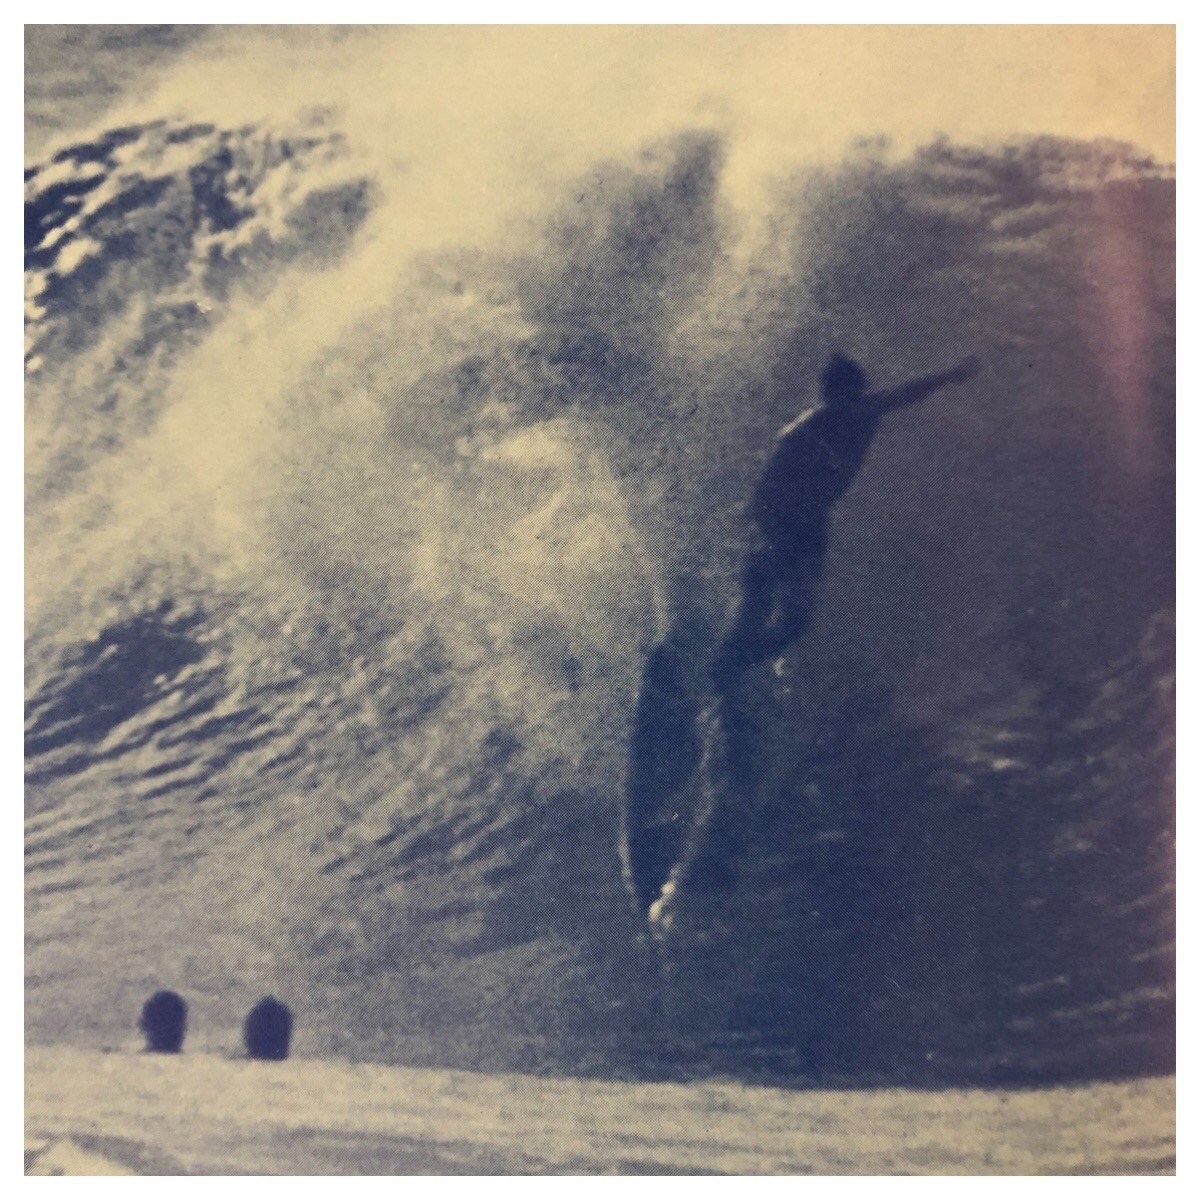 Butch Van Artsdalen – Surf Guide – 1963